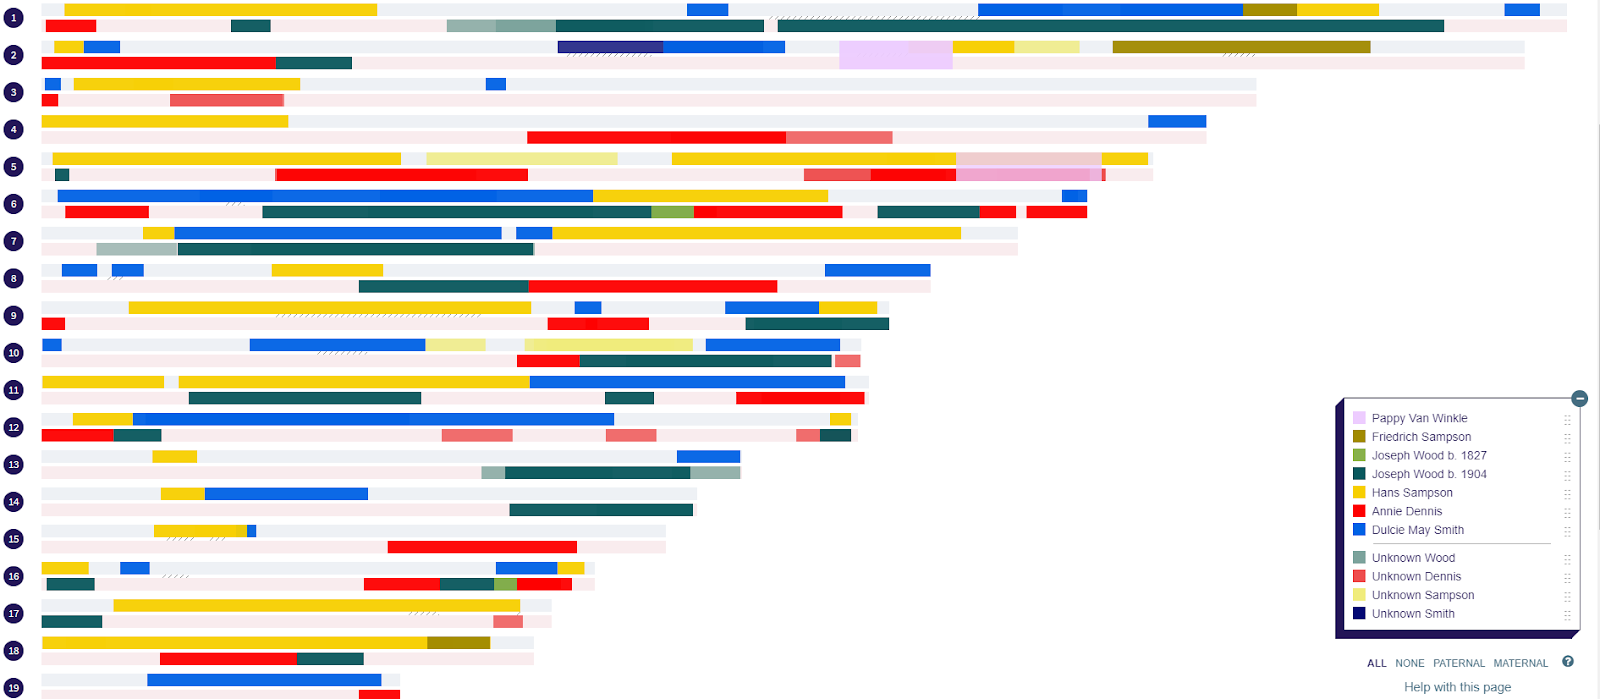 Un perfil cromosómico de muestra que muestra segmentos coincidentes que se cree provienen de diferentes ancestros. La leyenda de la derecha muestra las fuentes ancestrales autodefinidas por el usuario para estos segmentos. 